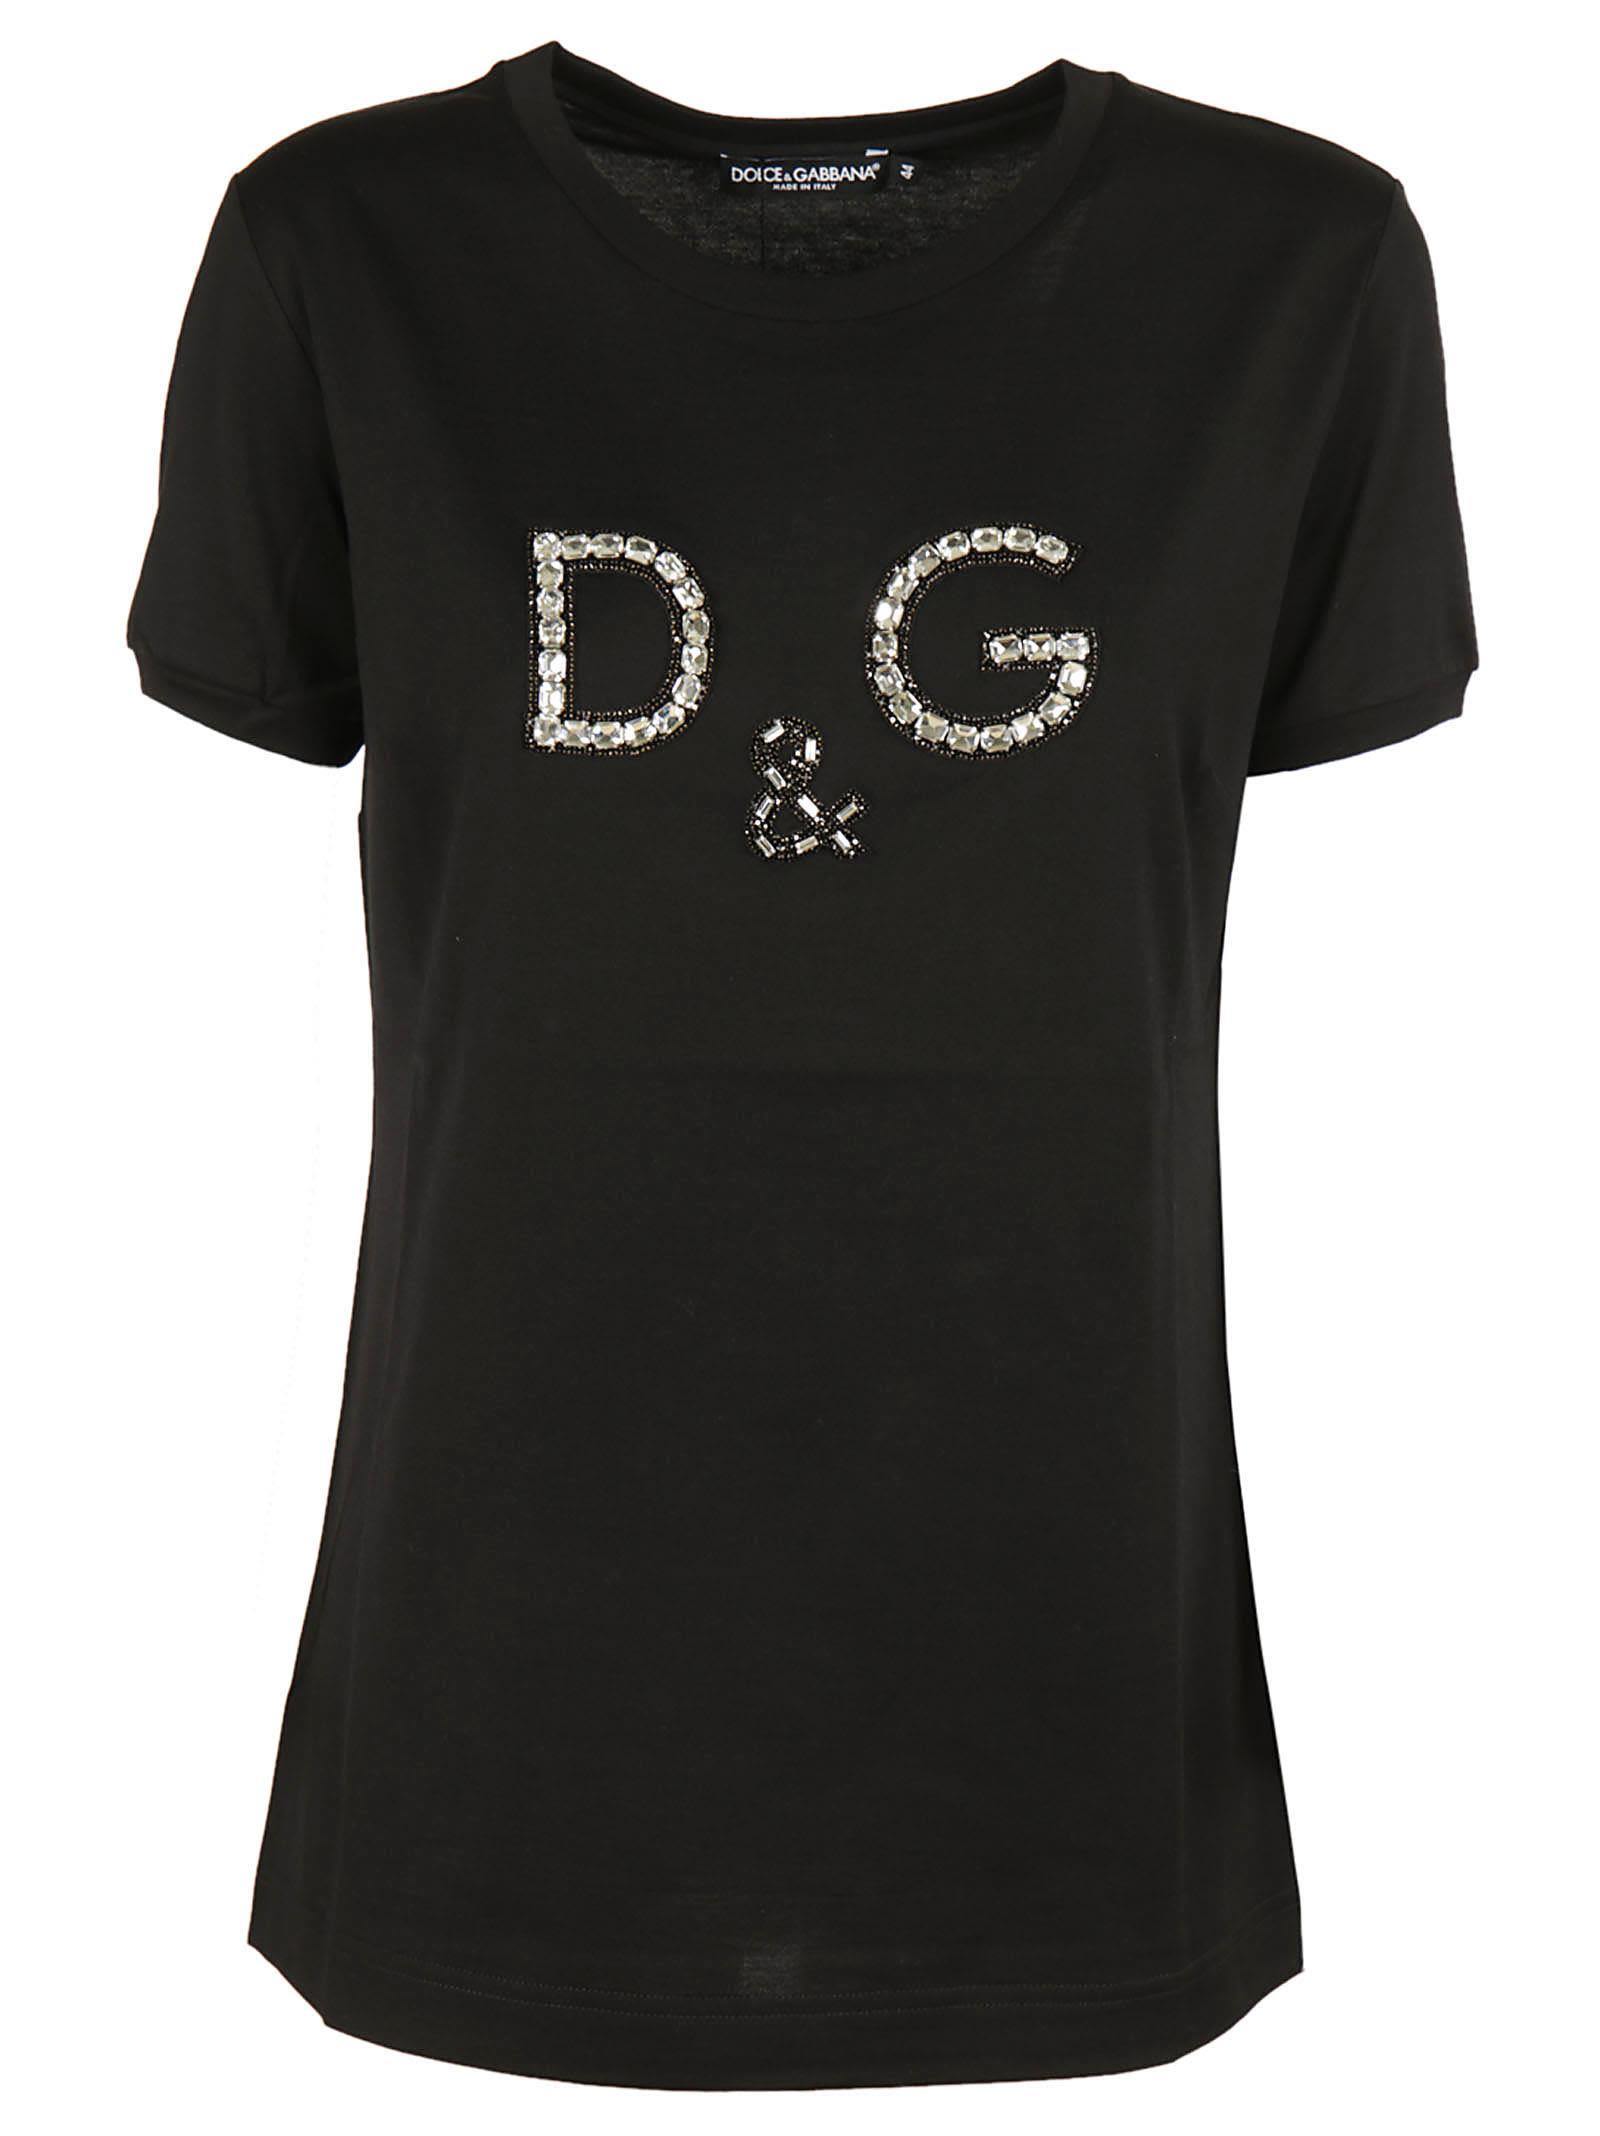 Dolce & Gabbana - Dolce & Gabbana Embellished Logo T-shirt - Nero ...